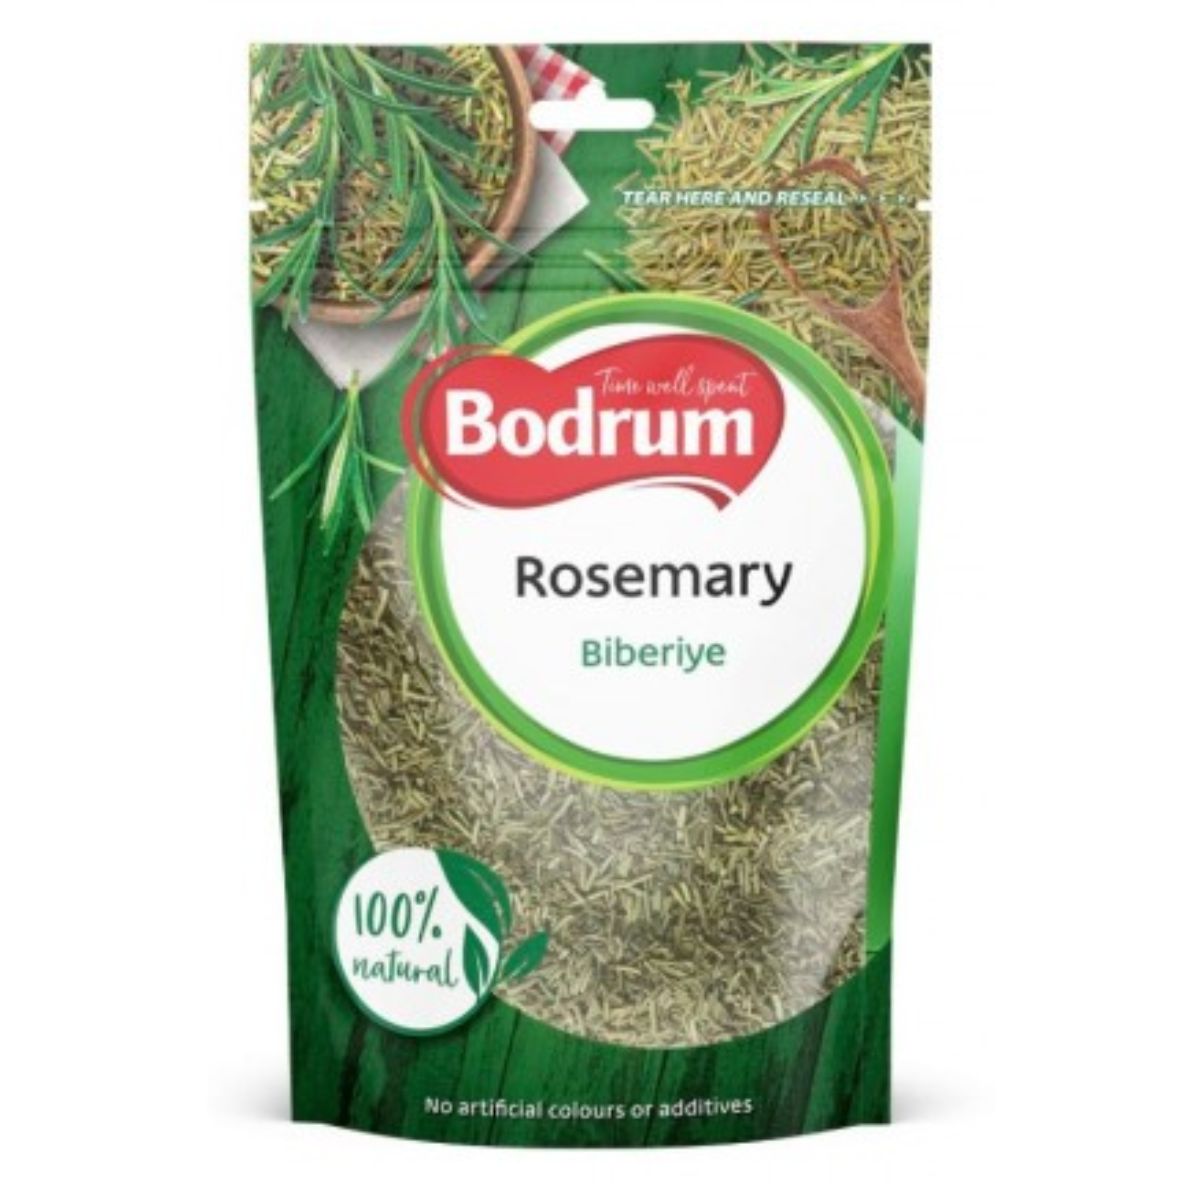 Bodrum - Rosemary - 50g rosemary.